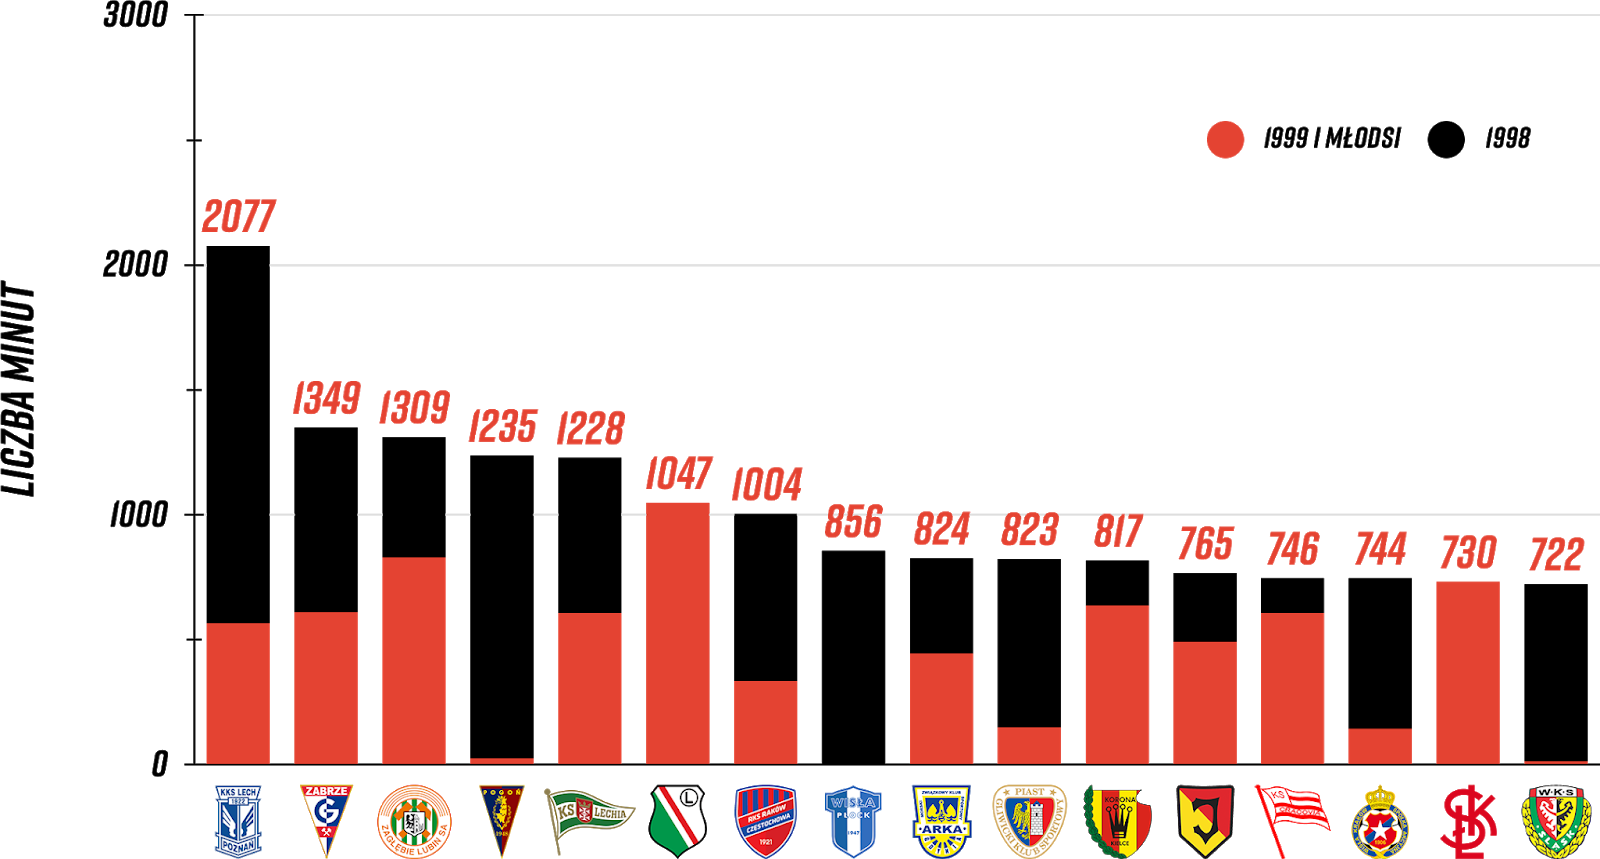 Klasyfikacja klubów pod względem rozegranych minut przez młodzieżowców po 8. kolejce PKO Ekstraklasy<br><br>Źródło: Opracowanie własne na podstawie ekstrastats.pl<br><br>graf. Bartosz Urban